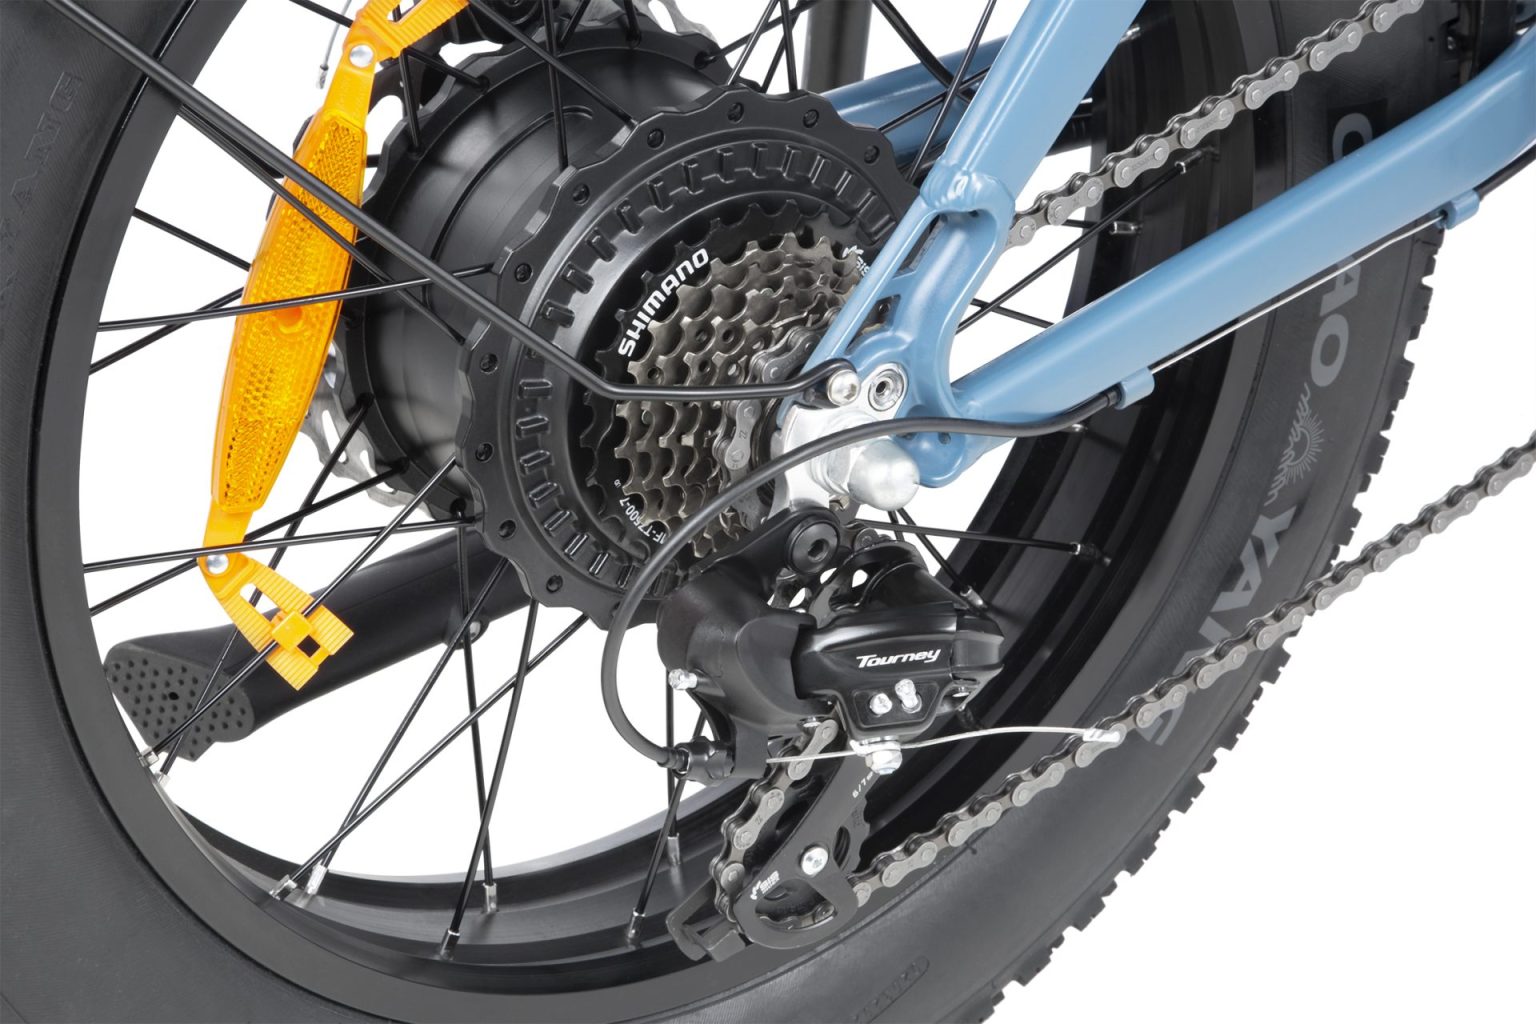 cmacewheel ks26 vélos électriques d'occasion sur ebay ebike banlieue ebike phare motan vélo électrique gros pneu tricycle électrique